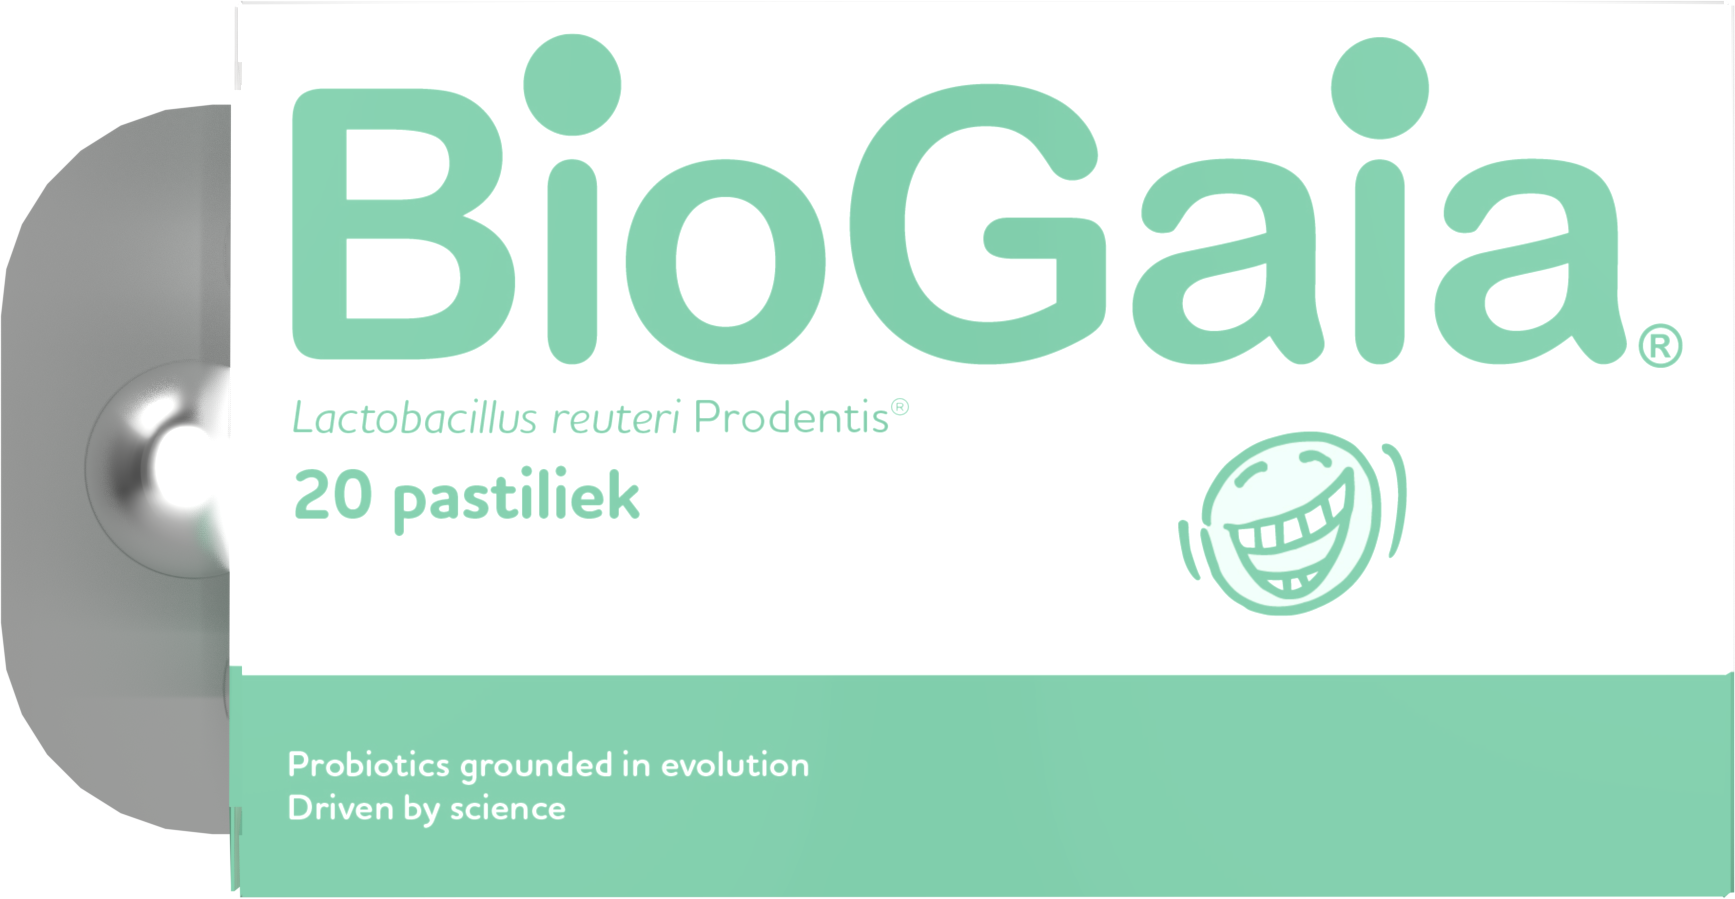 BioGaia Probiotic Prodentis Slovakia